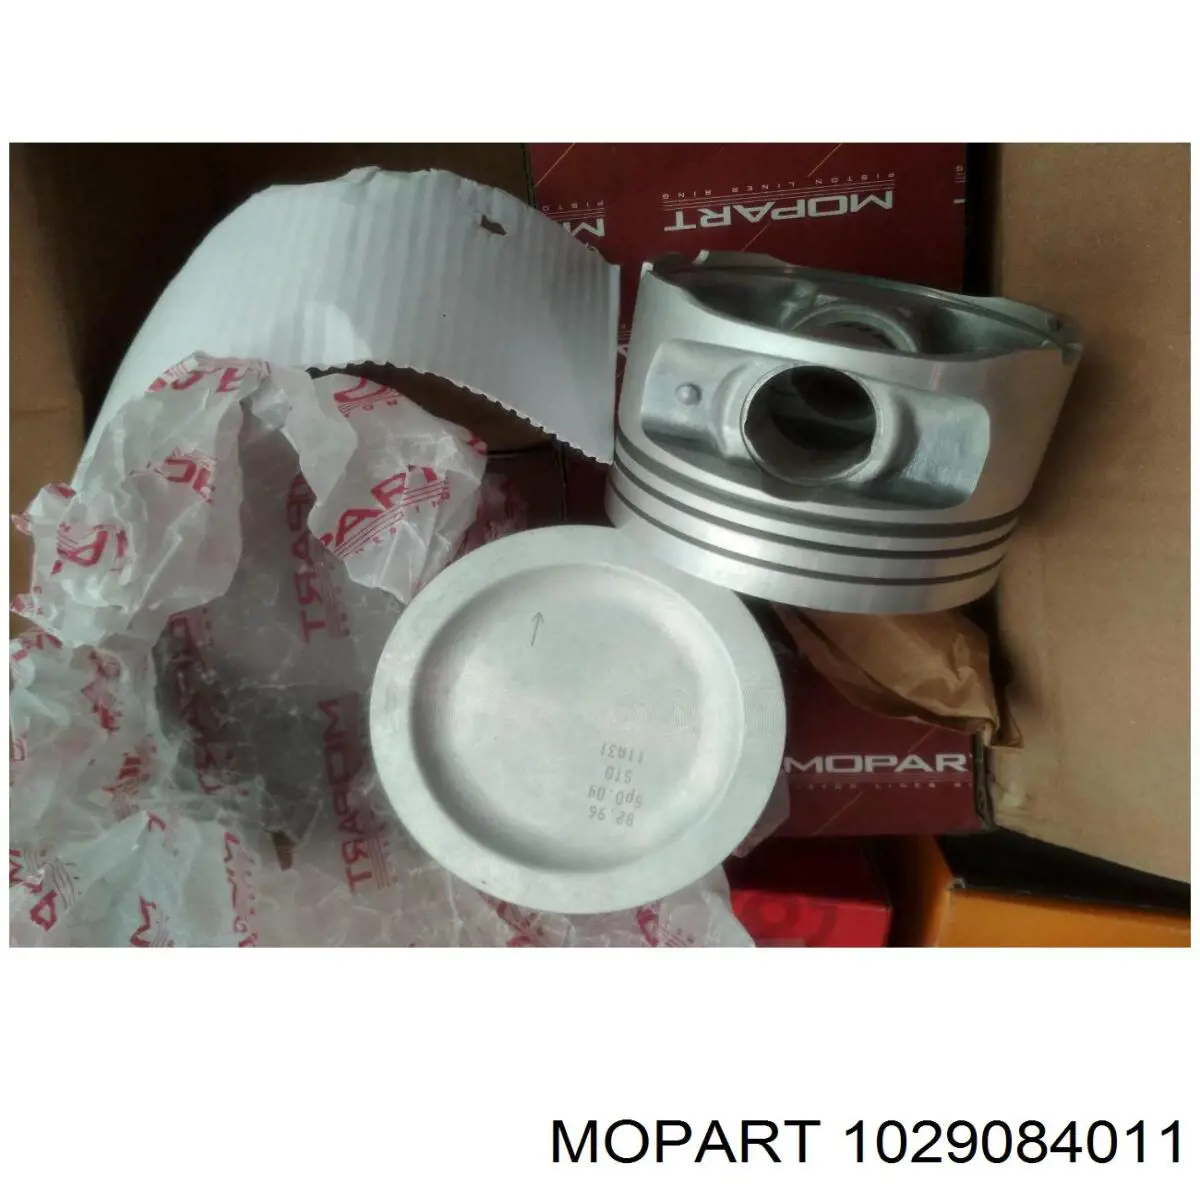 908402 Mopart поршень в комплекте на 1 цилиндр, 2-й ремонт (+0,50)